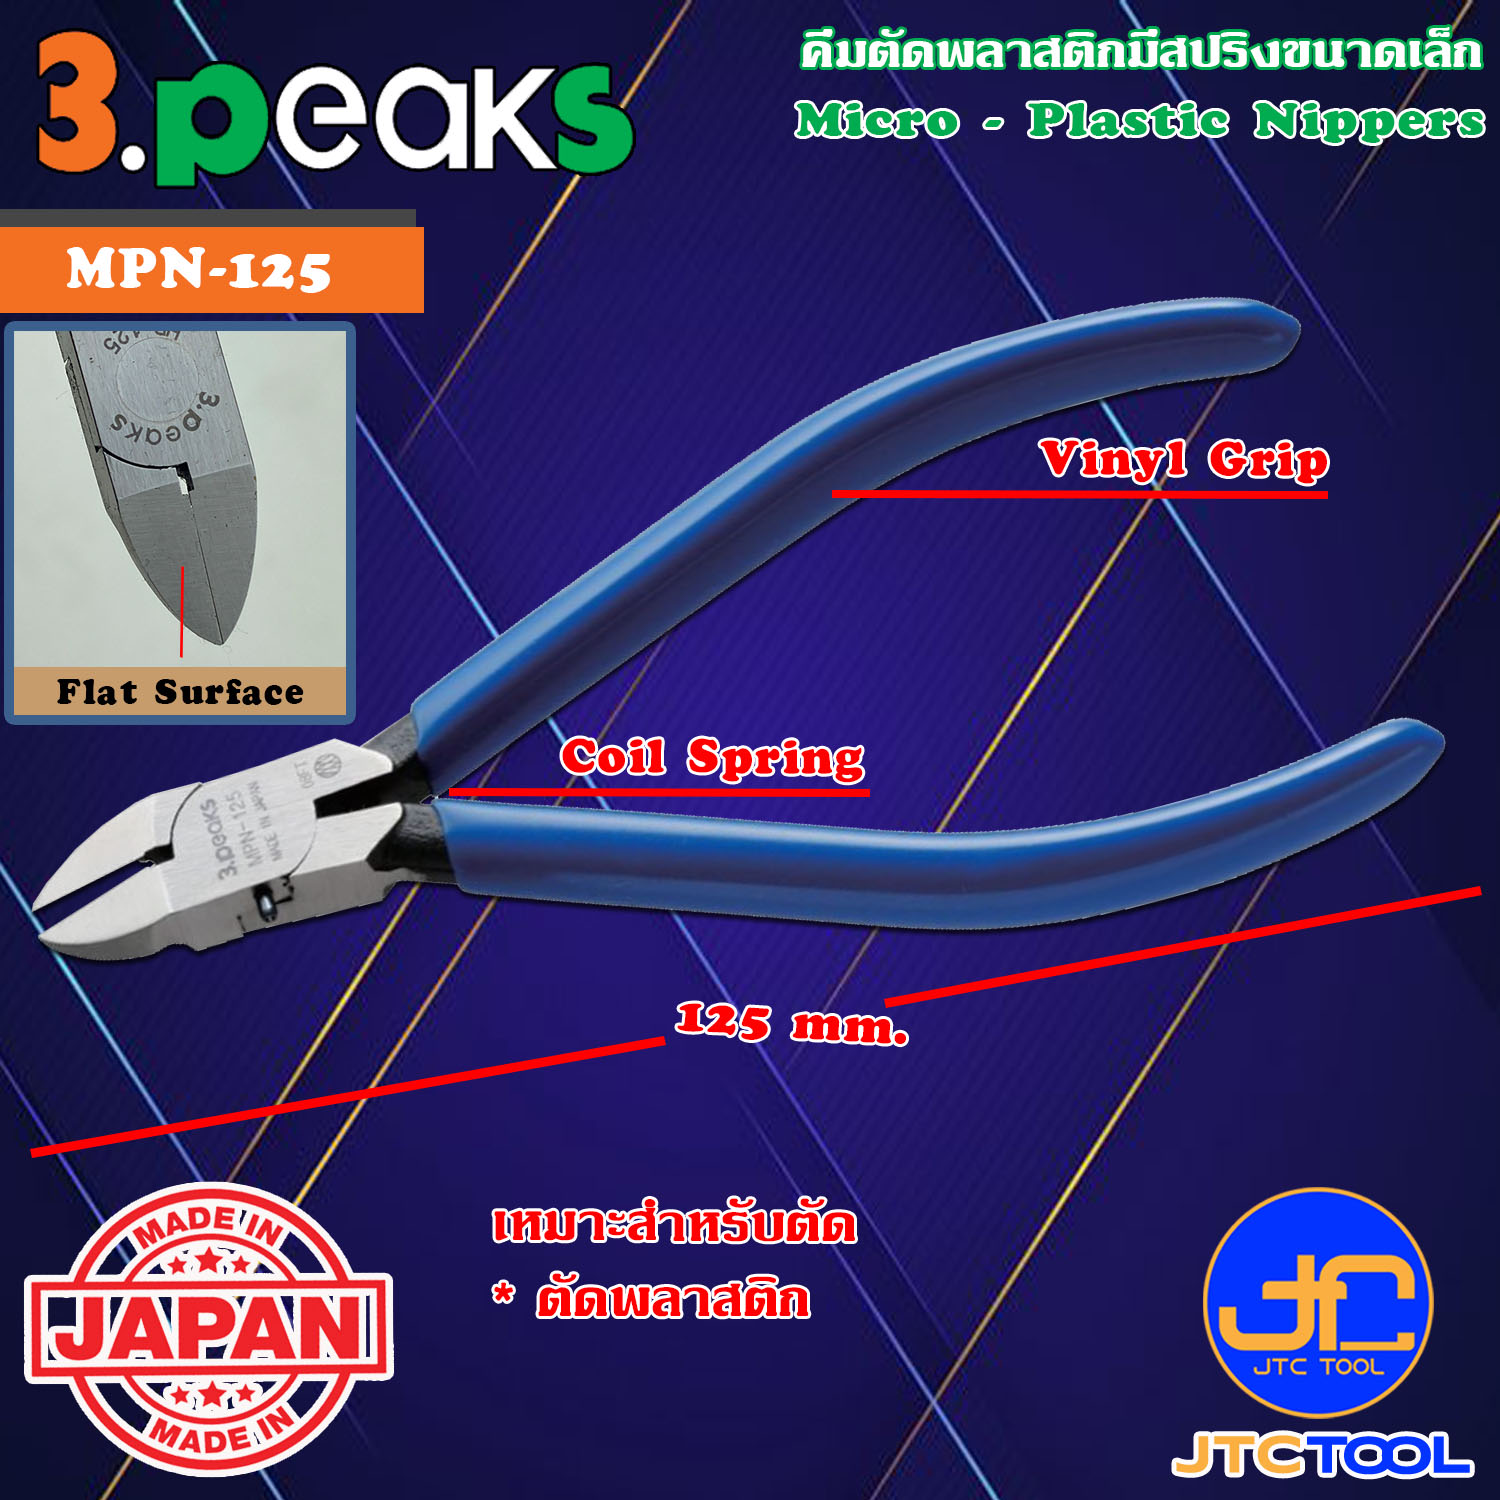 Micro Cutter Plier No:1 (3 Peaks Brand Japan) Cutting Tools 3 Peaks